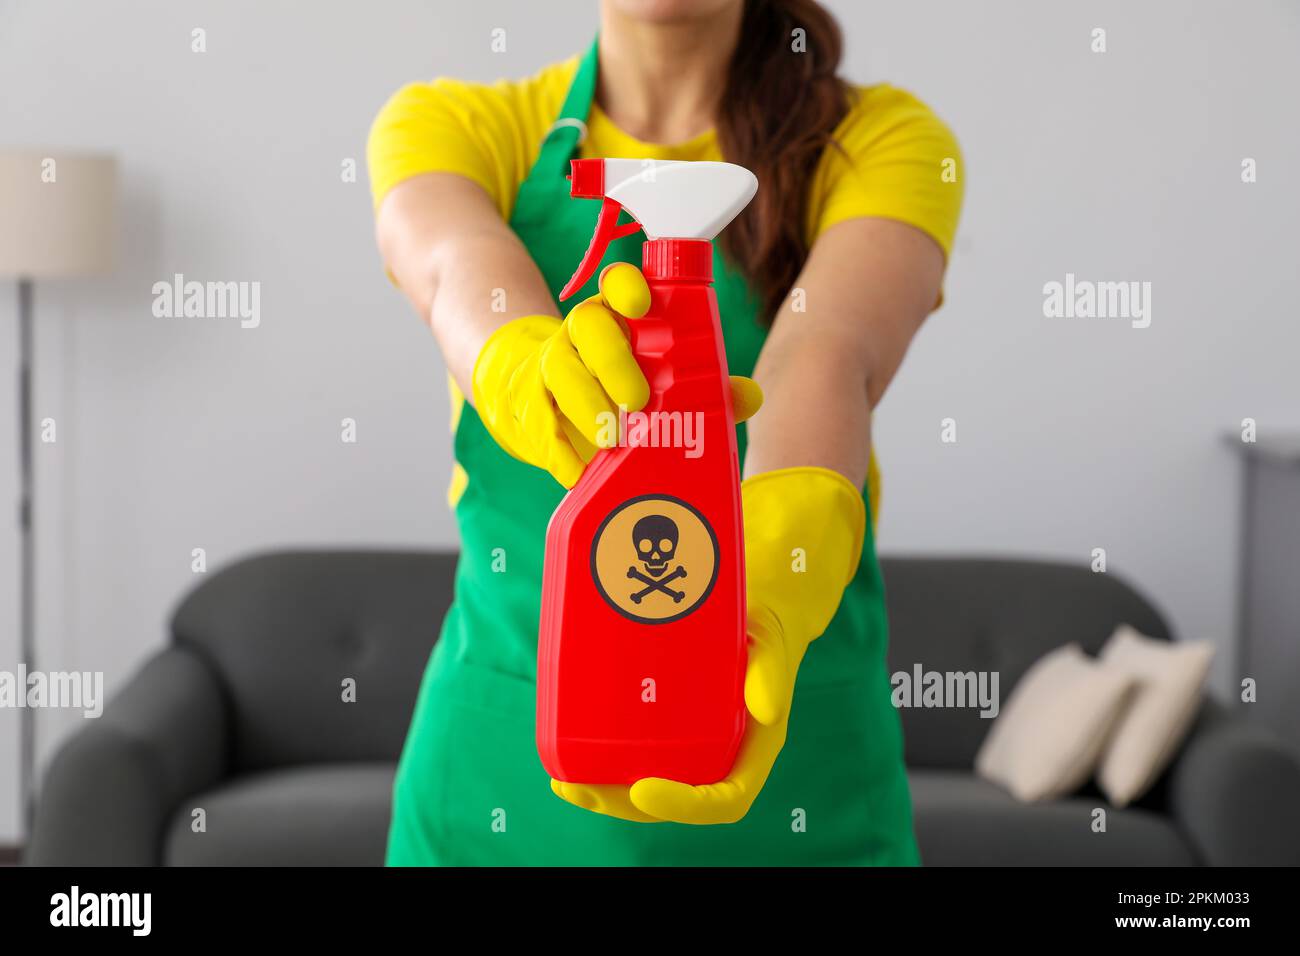 Femme montrant une bouteille de produit chimique toxique domestique avec un panneau d'avertissement, gros plan Banque D'Images